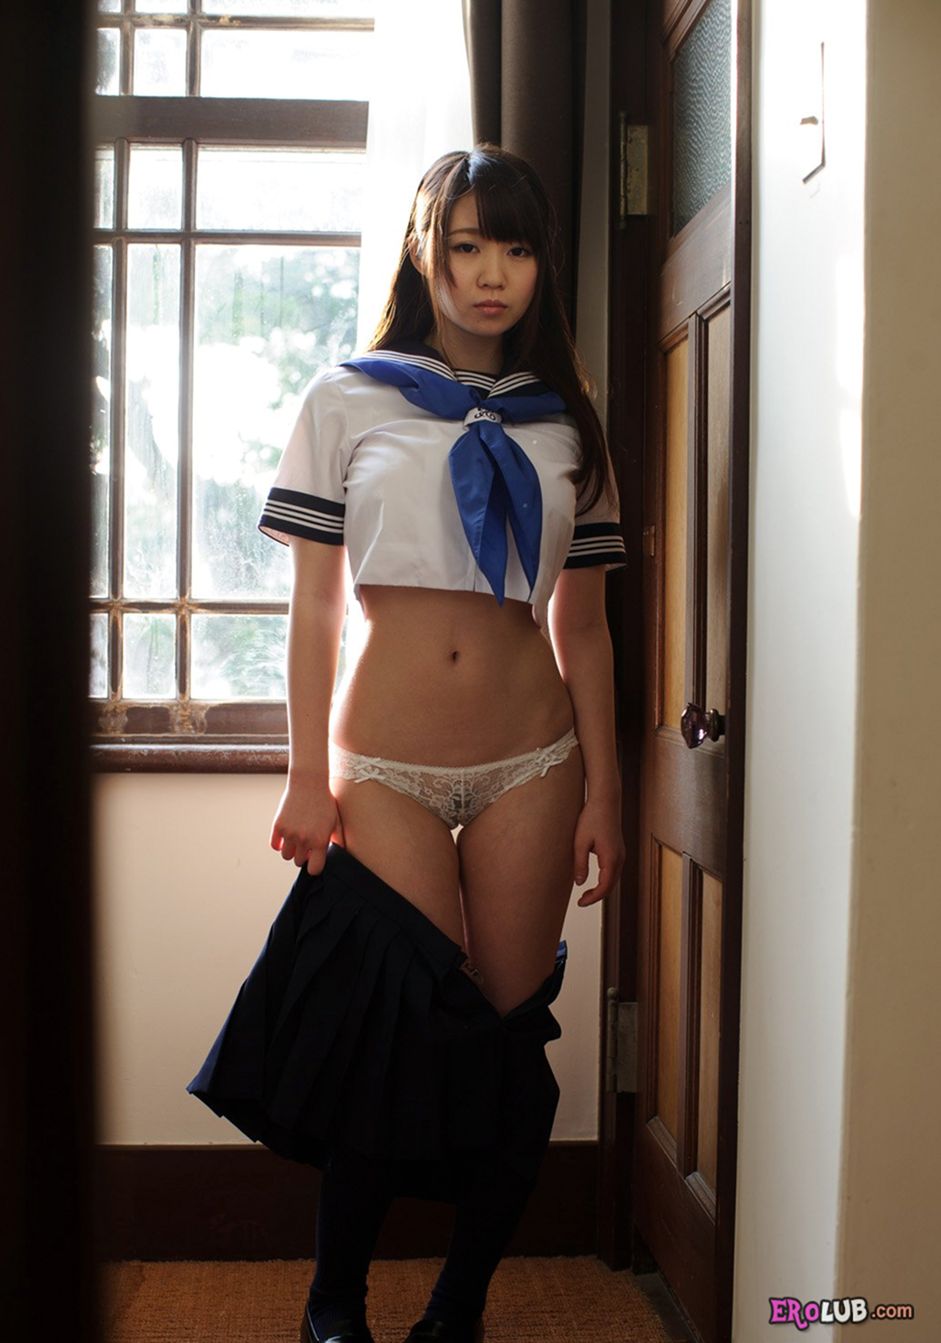 Японская порно девушка показывает свои маленькие сиськи и бритую киску, получая удовольствие